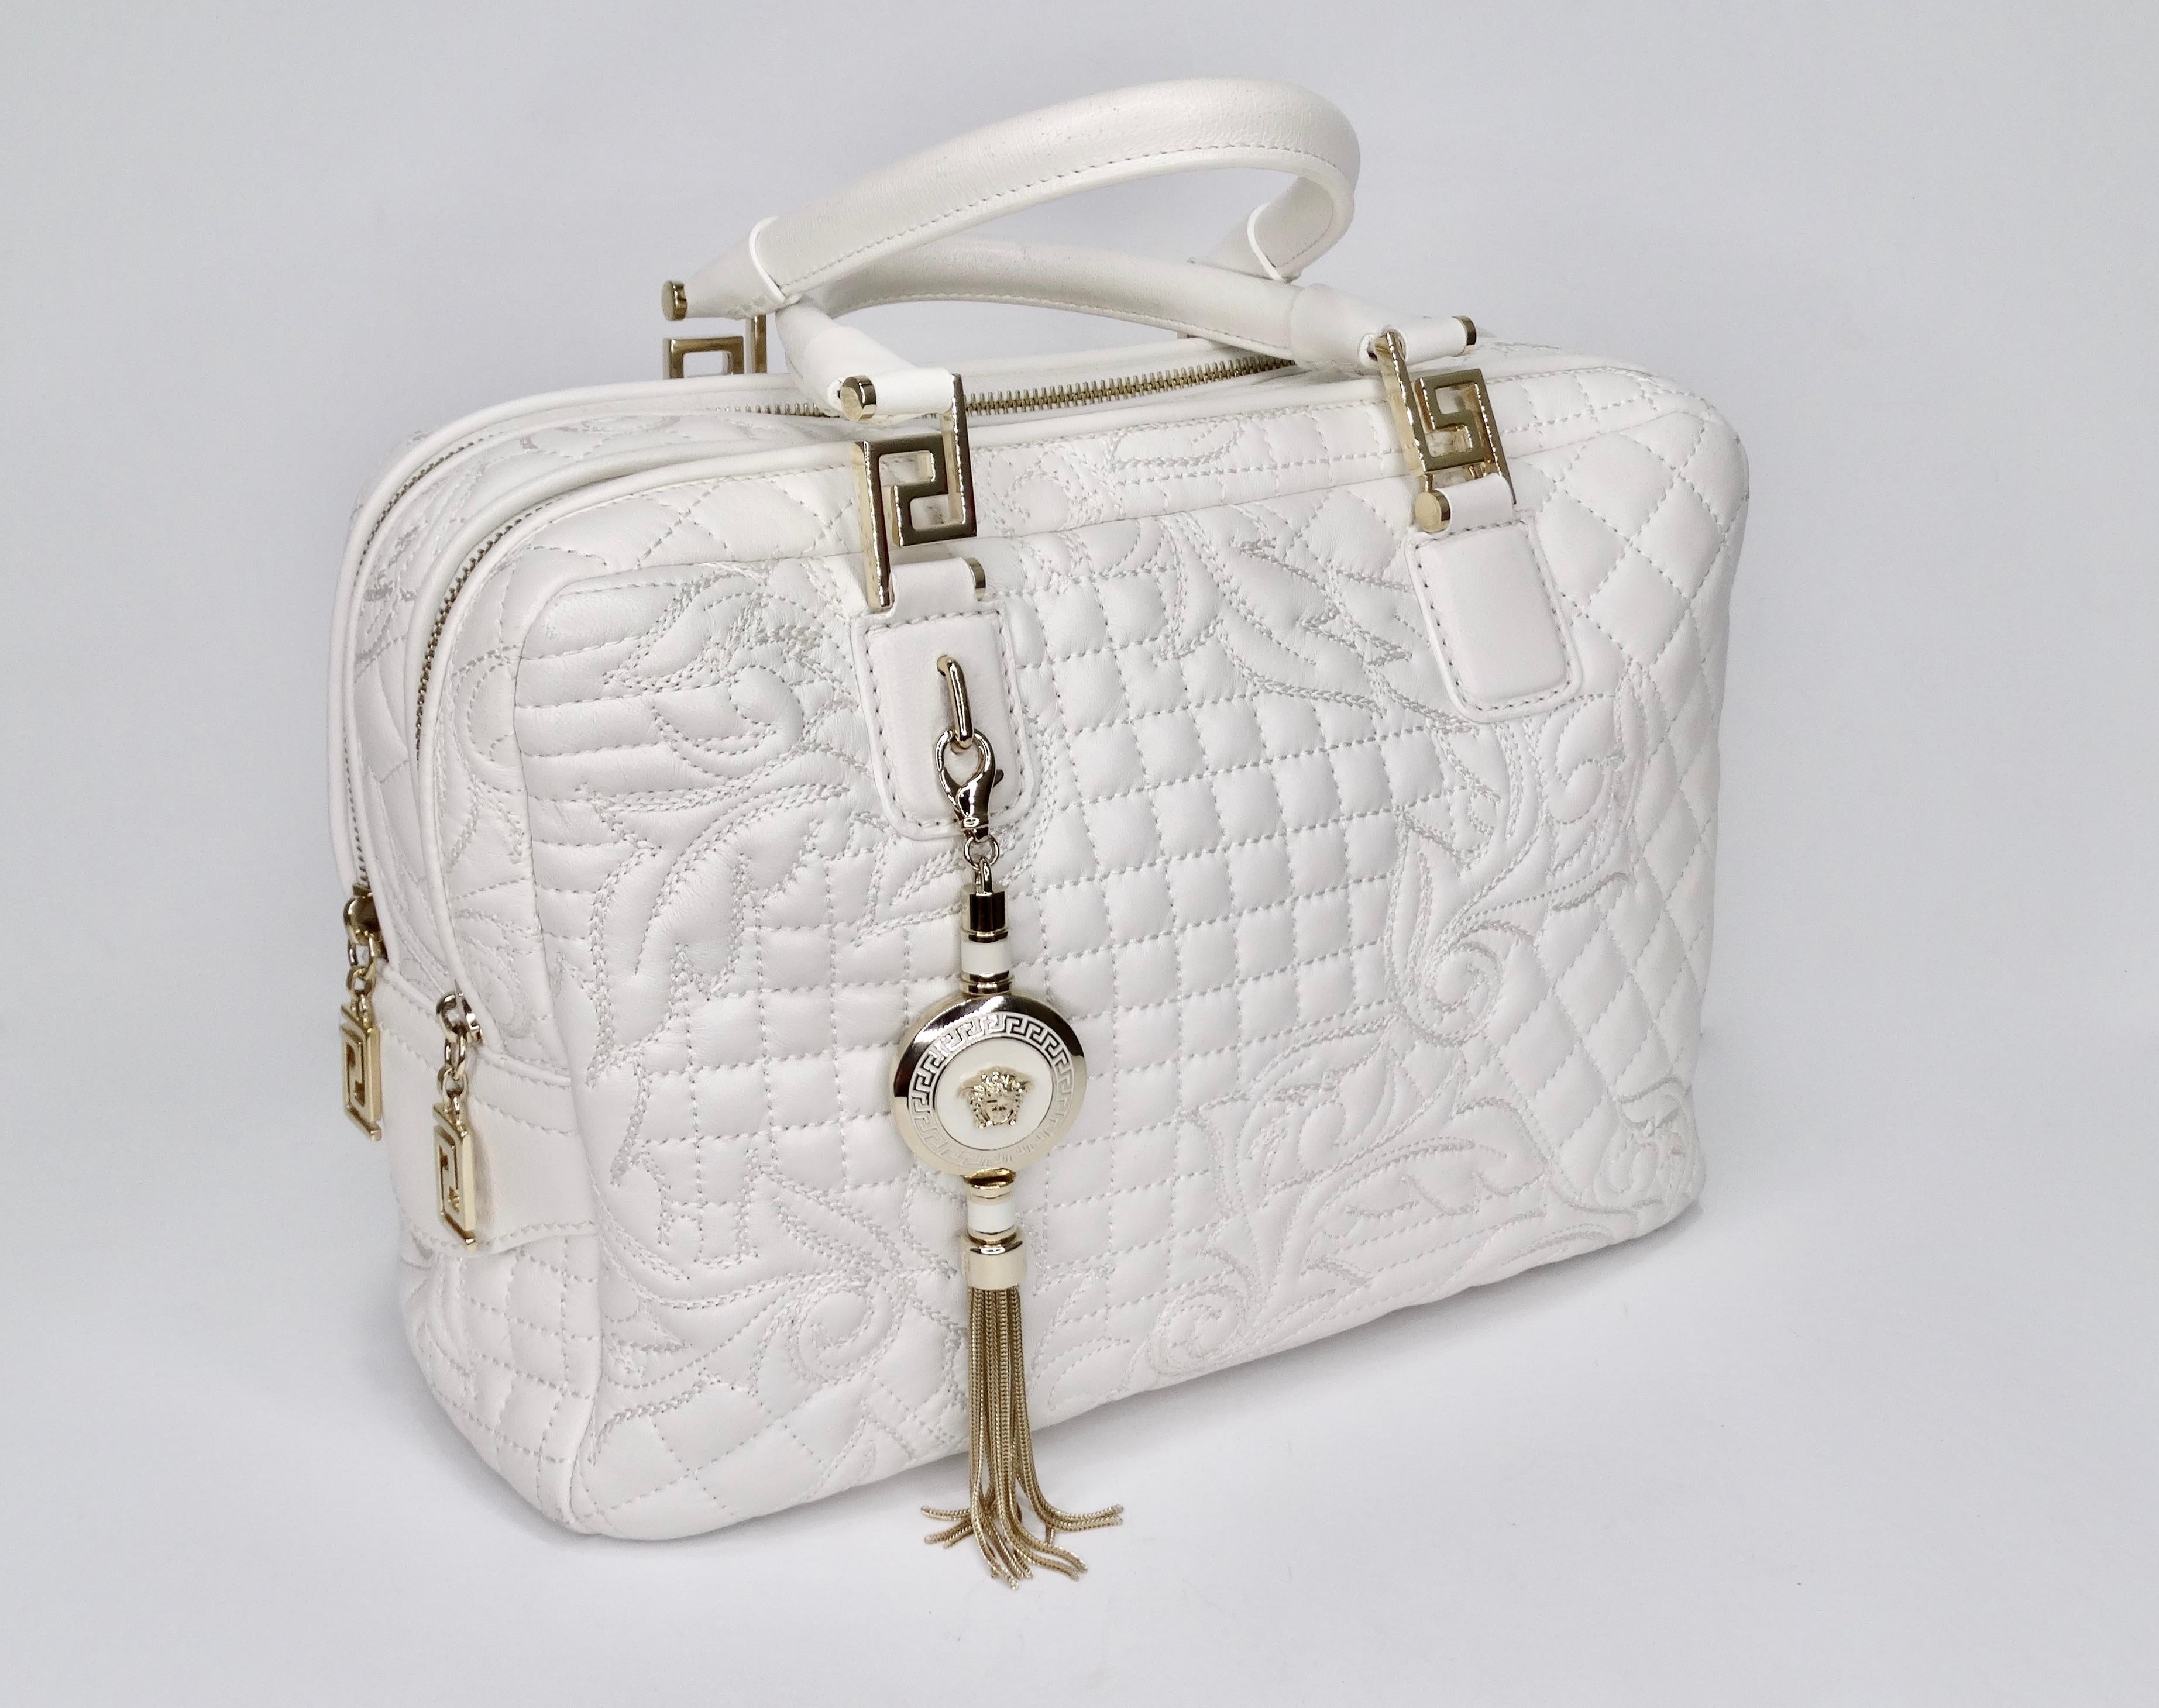 Aufruf an alle Versace-Liebhaber! Mitte der 2000er Jahre wurde diese Handtasche aus weißem Leder gefertigt und verfügt über gesteppte Nähte mit dem charakteristischen Versace-Barockmuster, zwei gerollte Griffe, einen optionalen Schulterriemen,